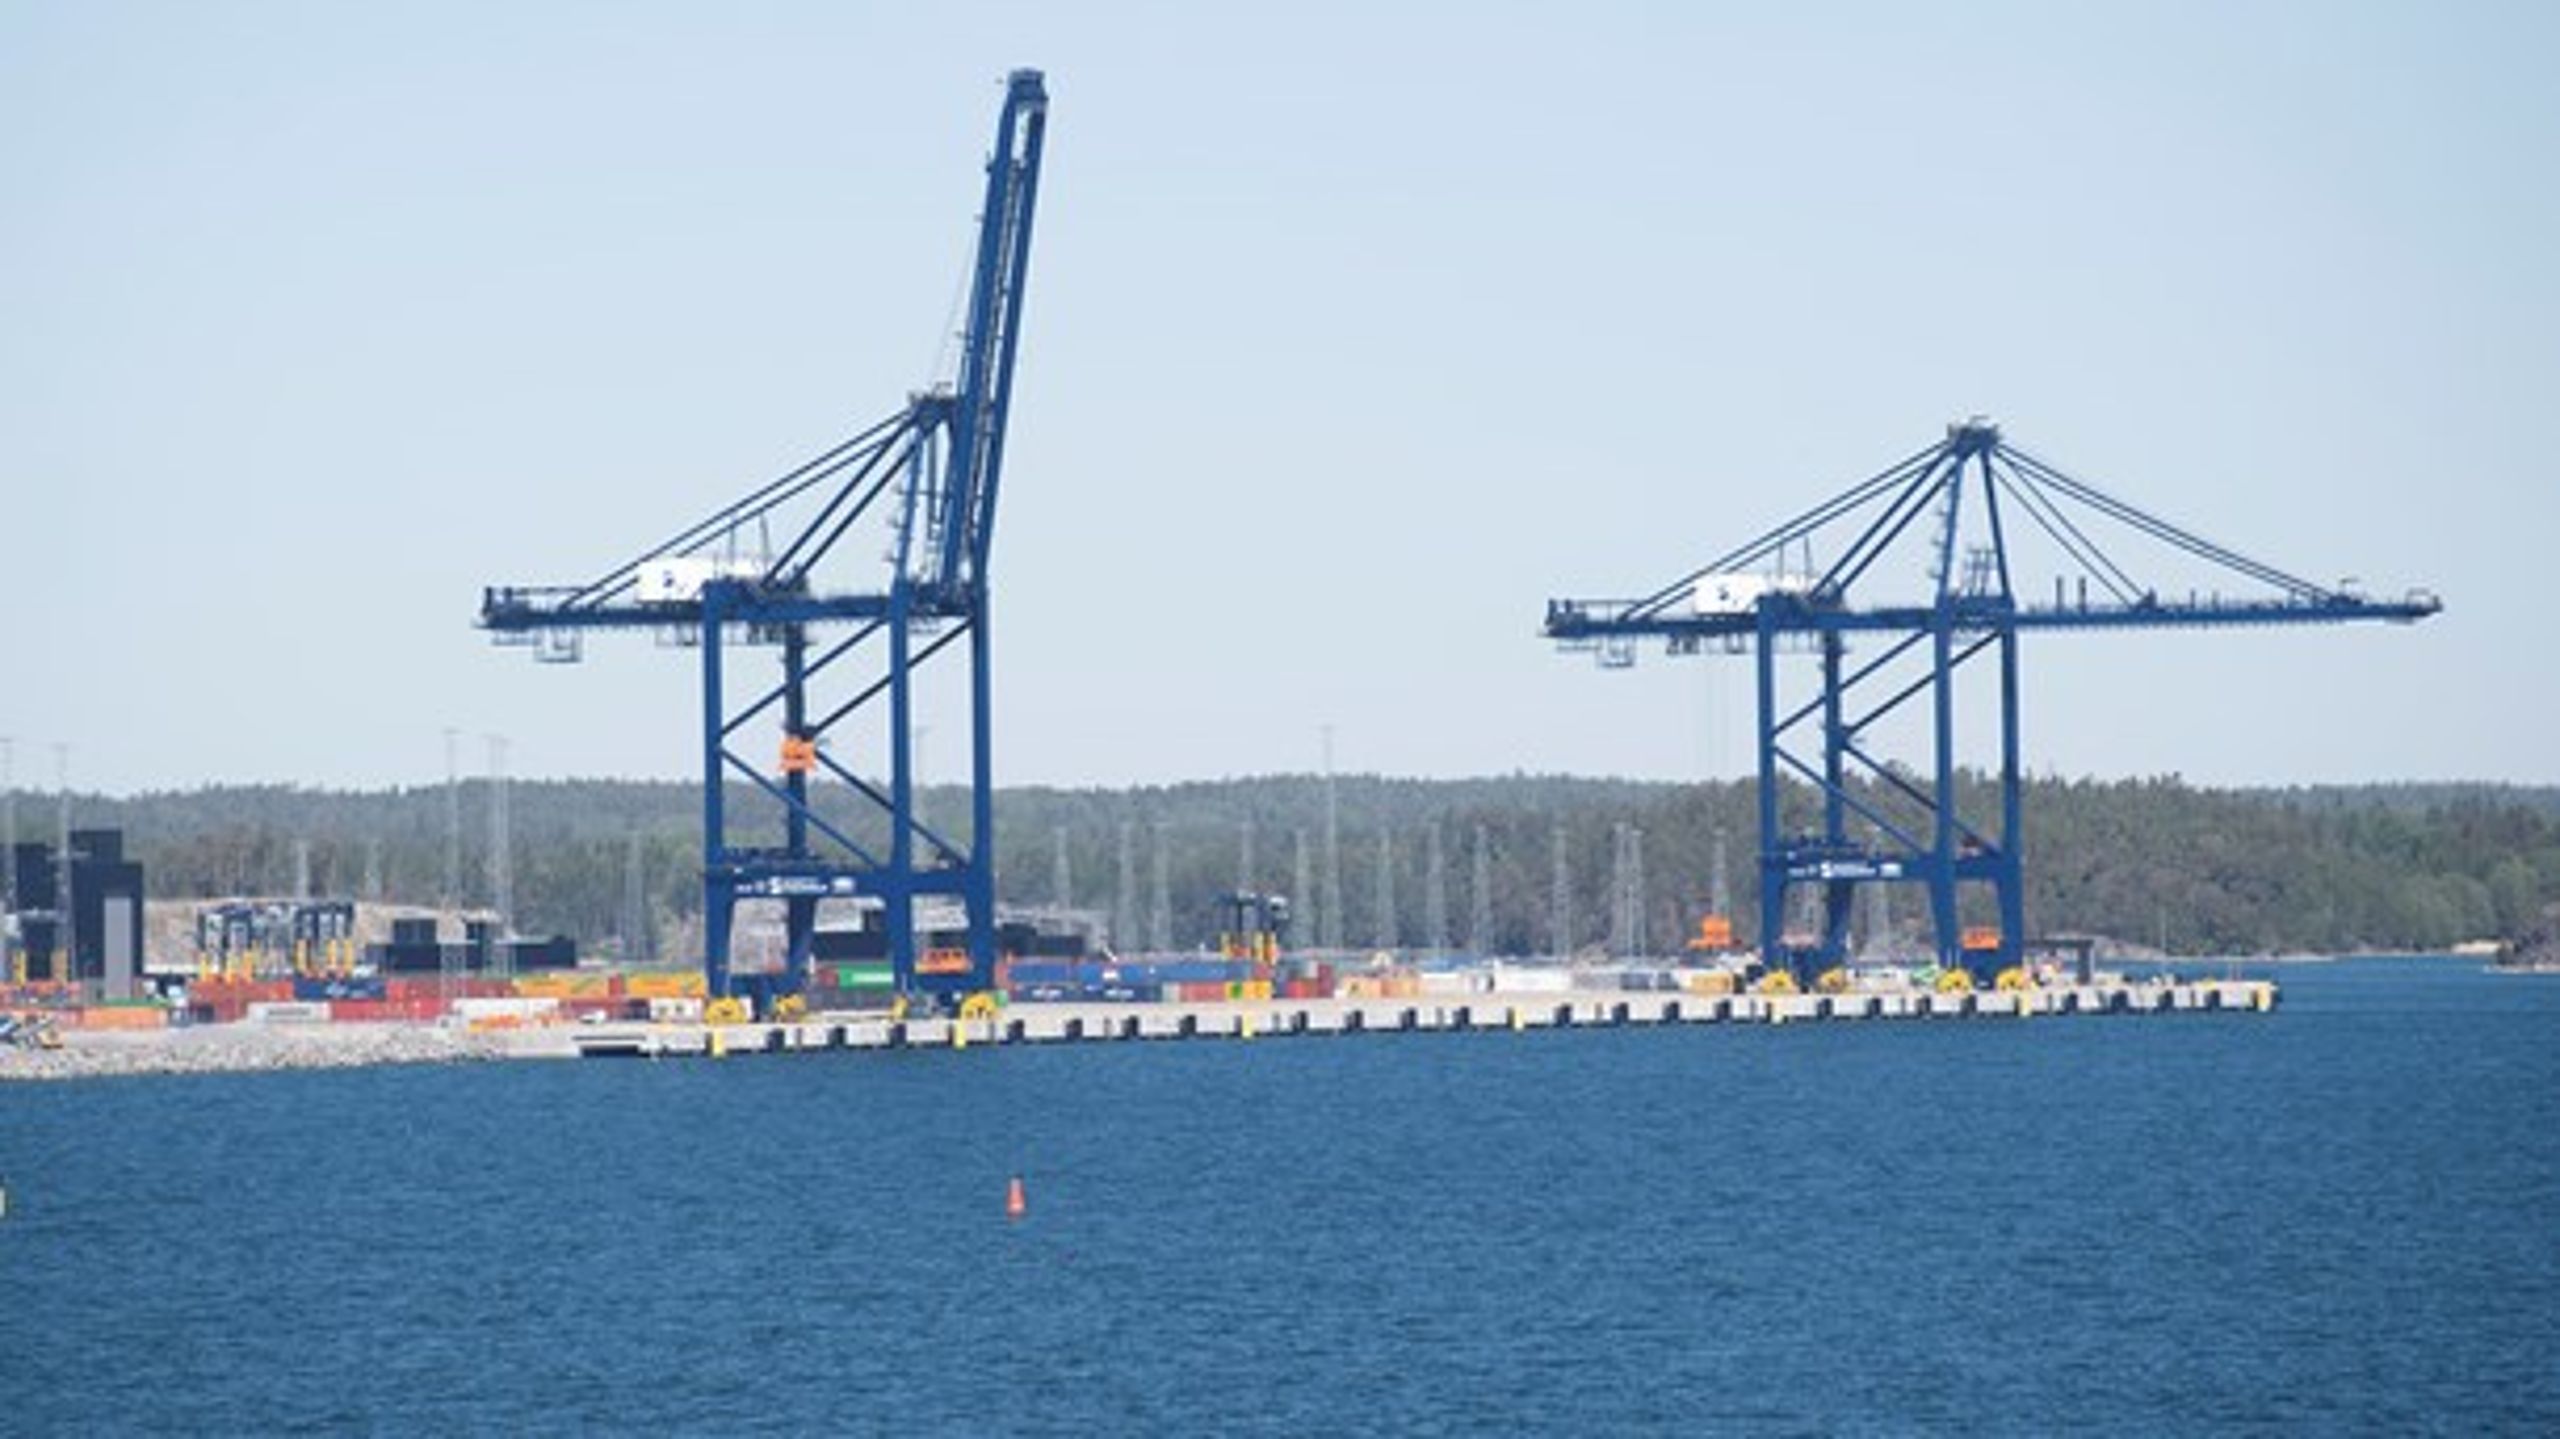 Hållbara hamnar är både en nationell och internationell angelägenhet.&nbsp;En väl utvecklad hamninfrastruktur är en förutsättning för ett konkurrenskraftigt Sverige, skriver debattörerna.